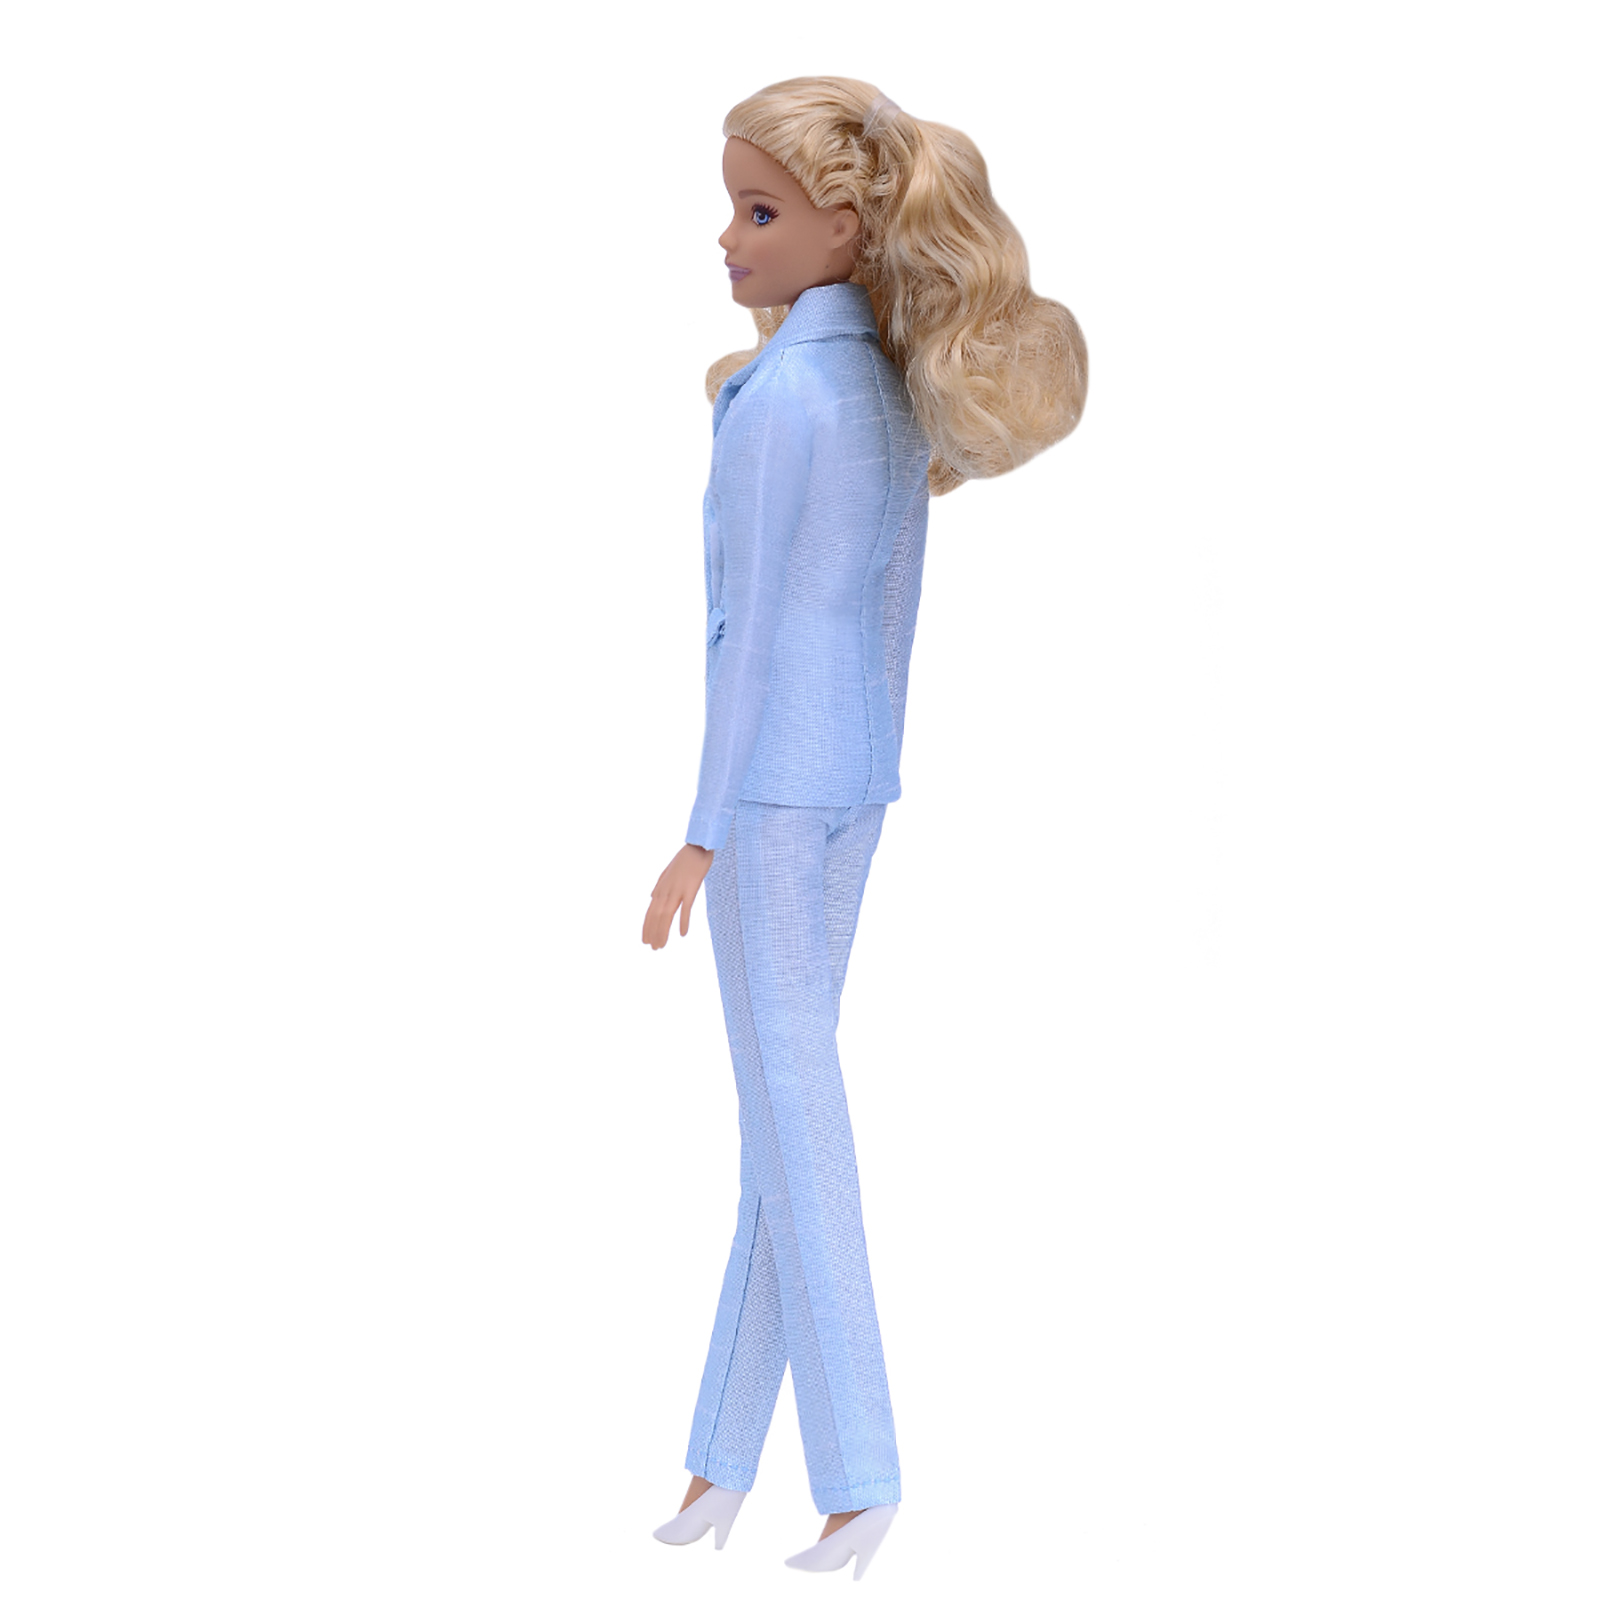 Шелковый брючный костюм Эленприв Светло-голубой для куклы 29 см типа Барби FA-011-09 - фото 6